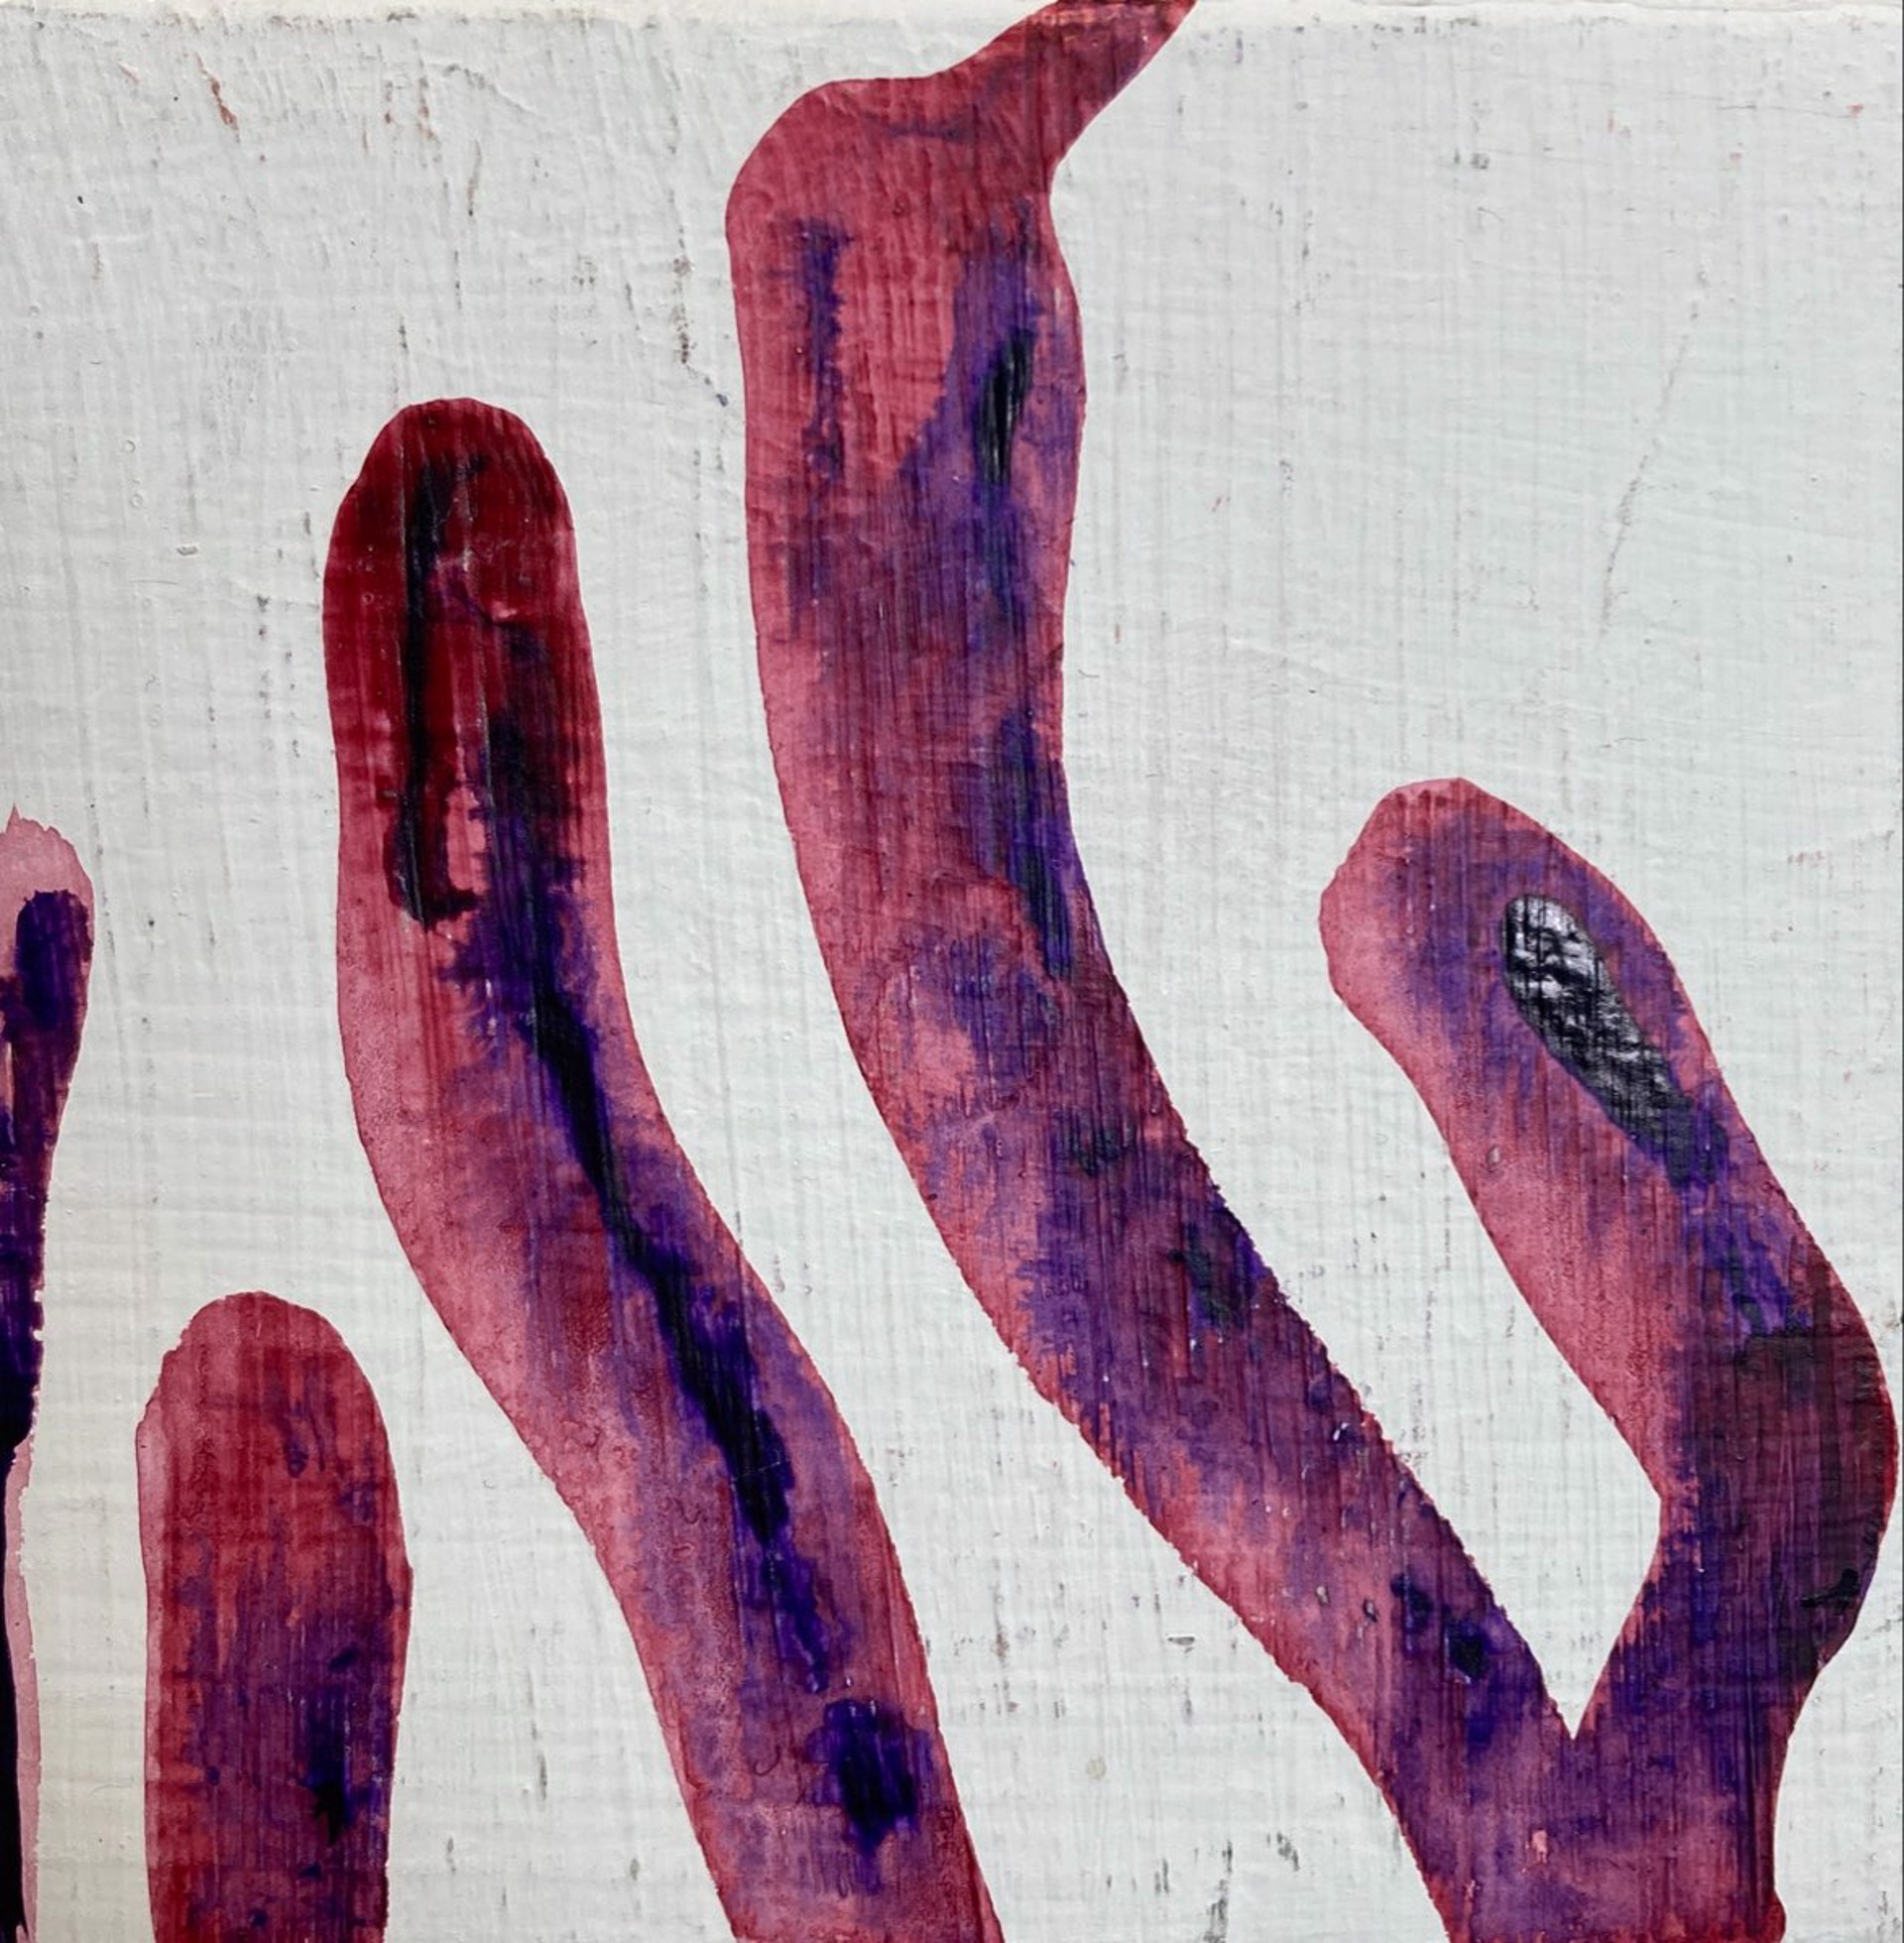 6 Alien Fingers by L.B. Berman